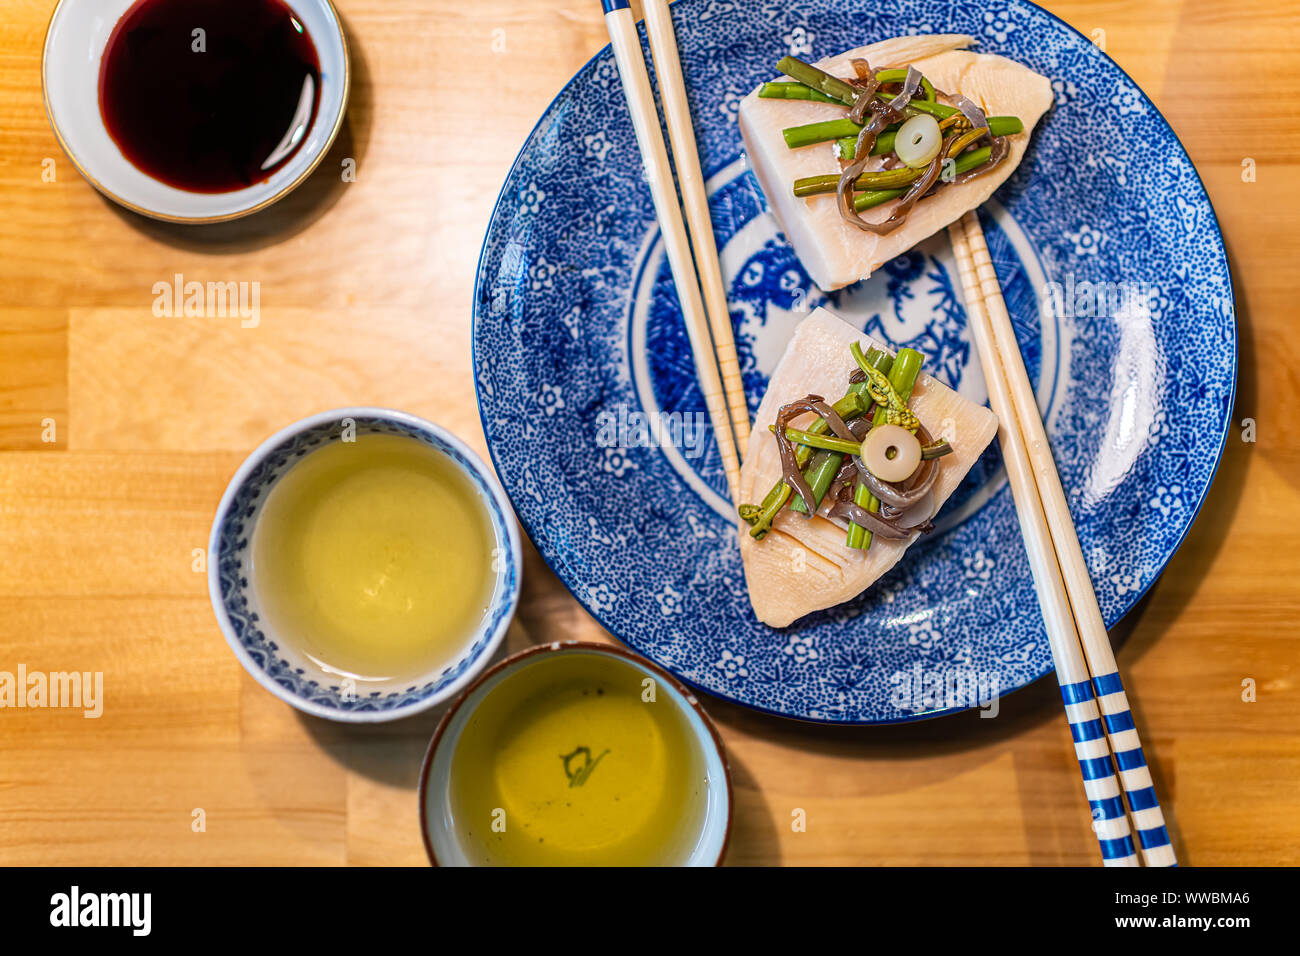 La plaque traditionnelle japonaise sur table en bois avec des légumes de printemps takenoko de pousses de bambou, sansai d'herbes sauvages avec des baguettes, je Thé vert sencha Banque D'Images